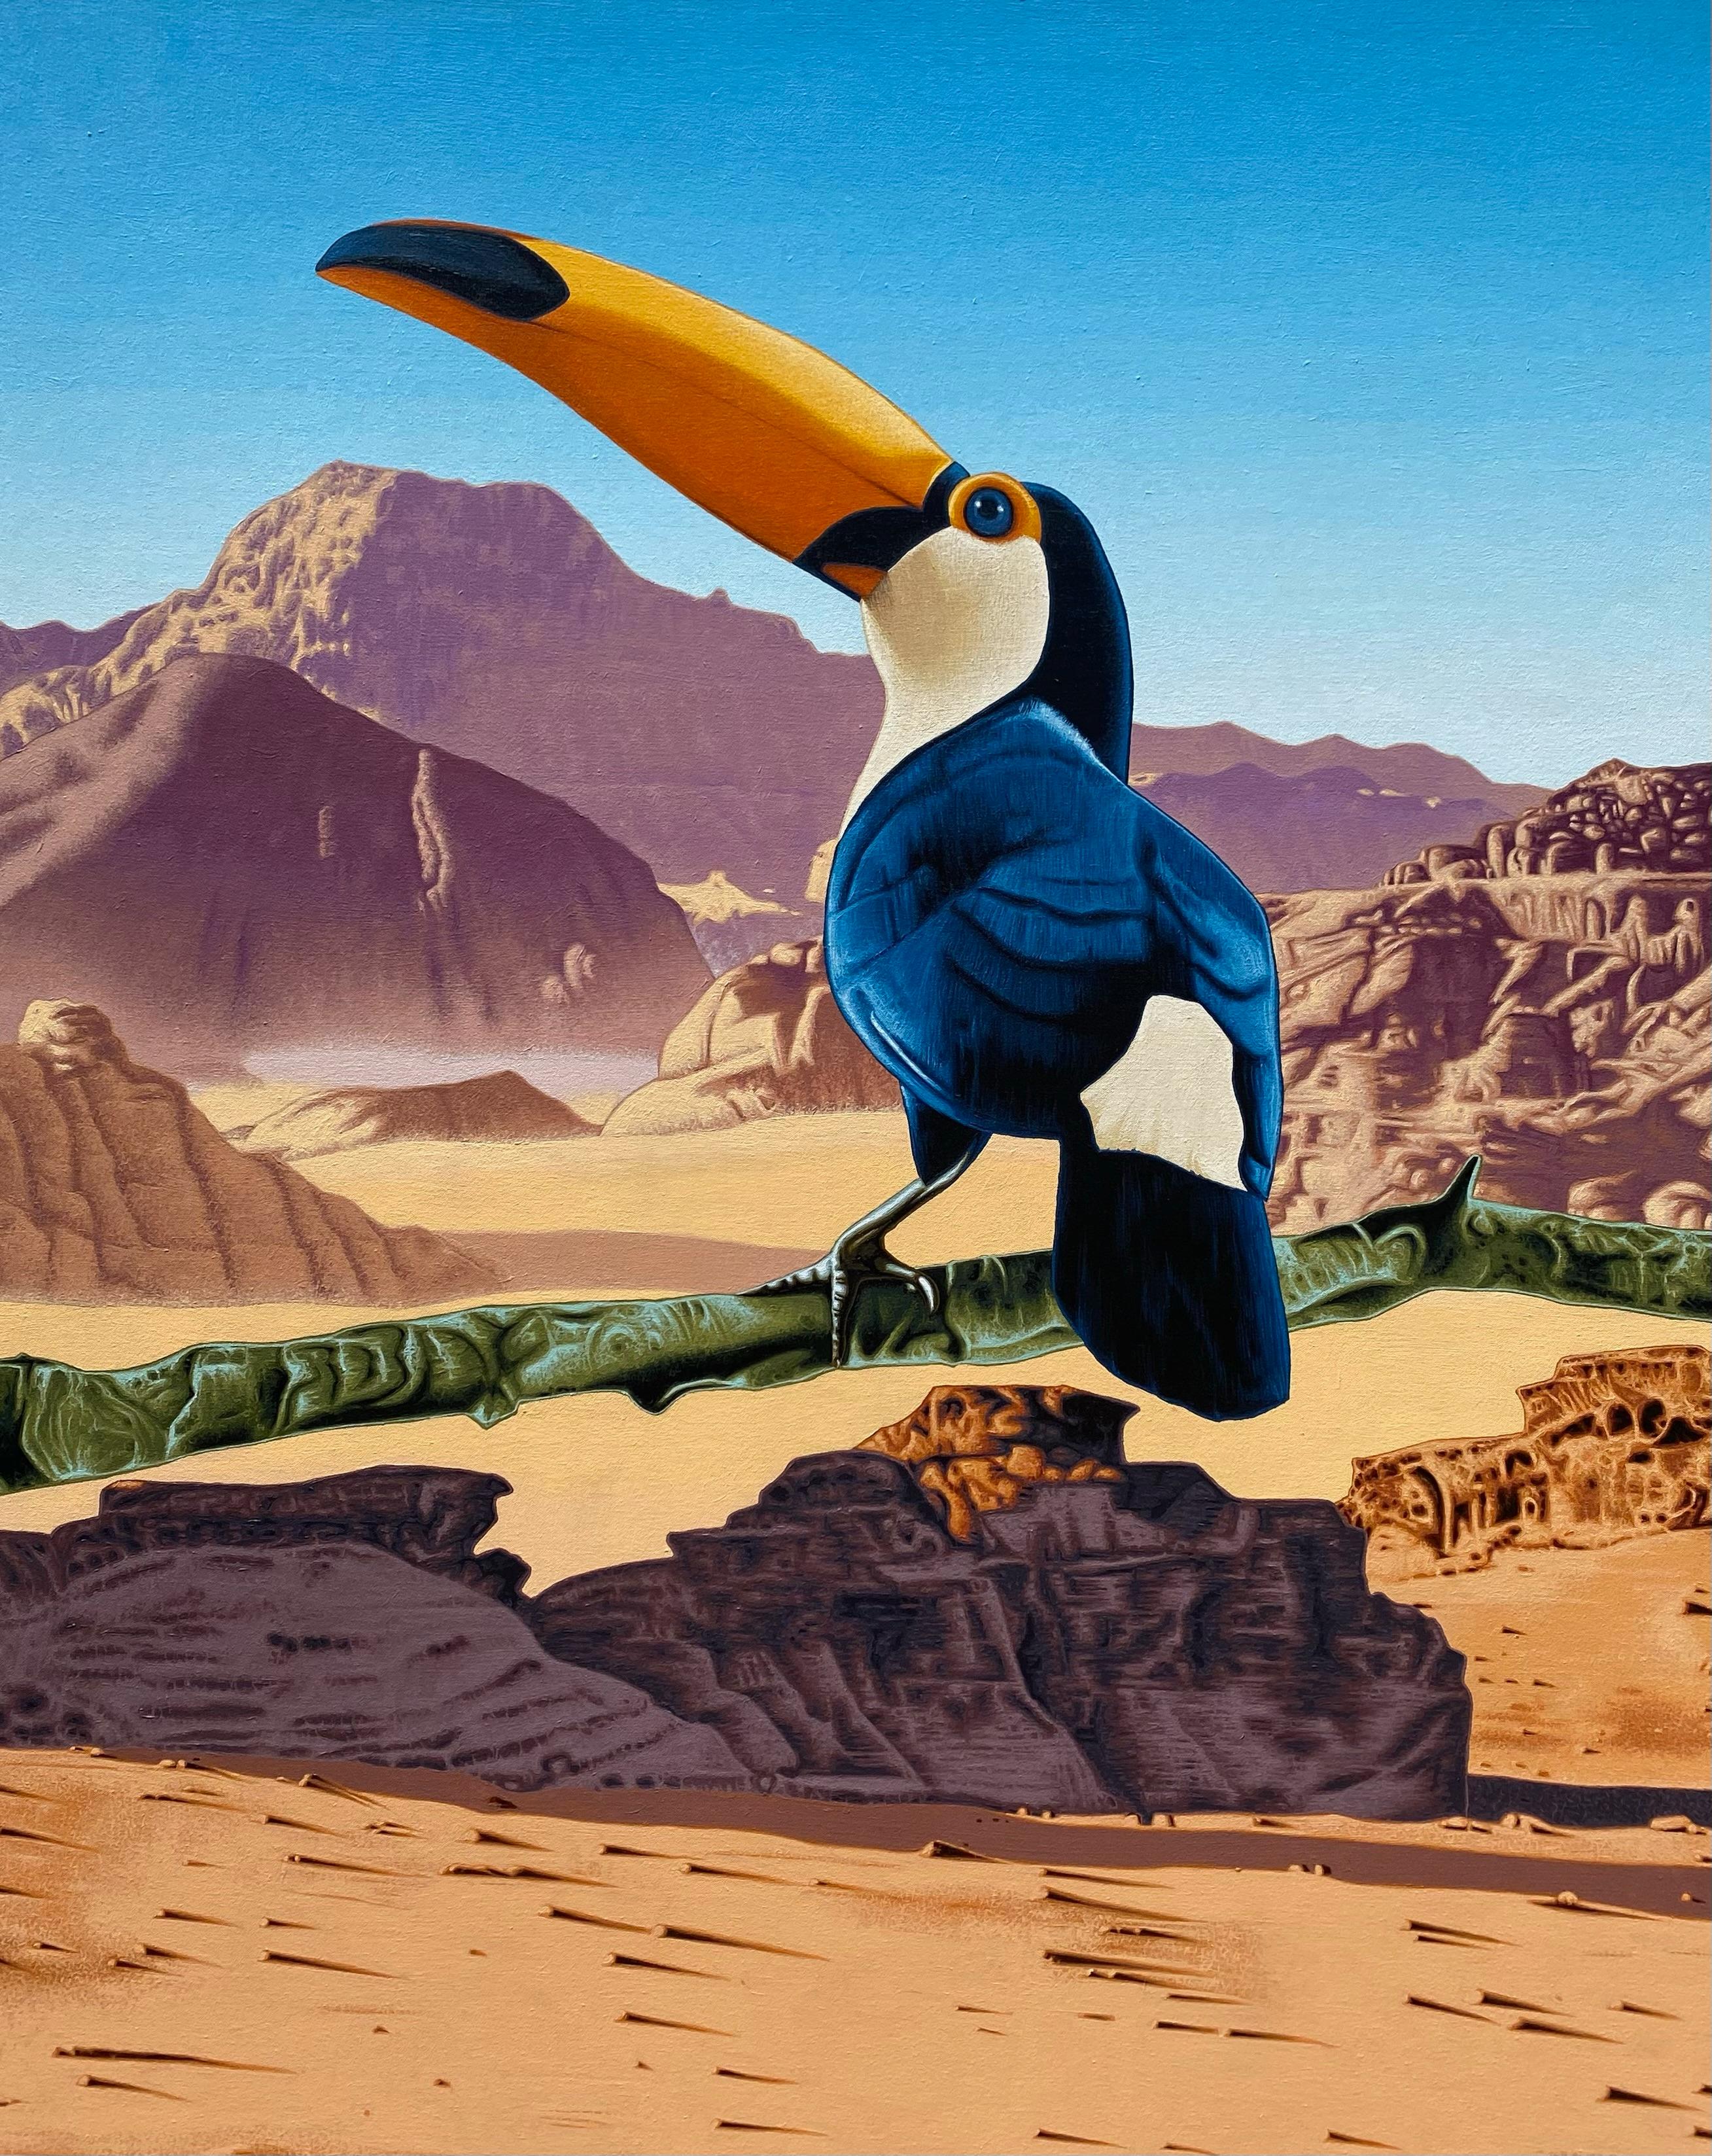 Toucan in desert: “No Mirage” 